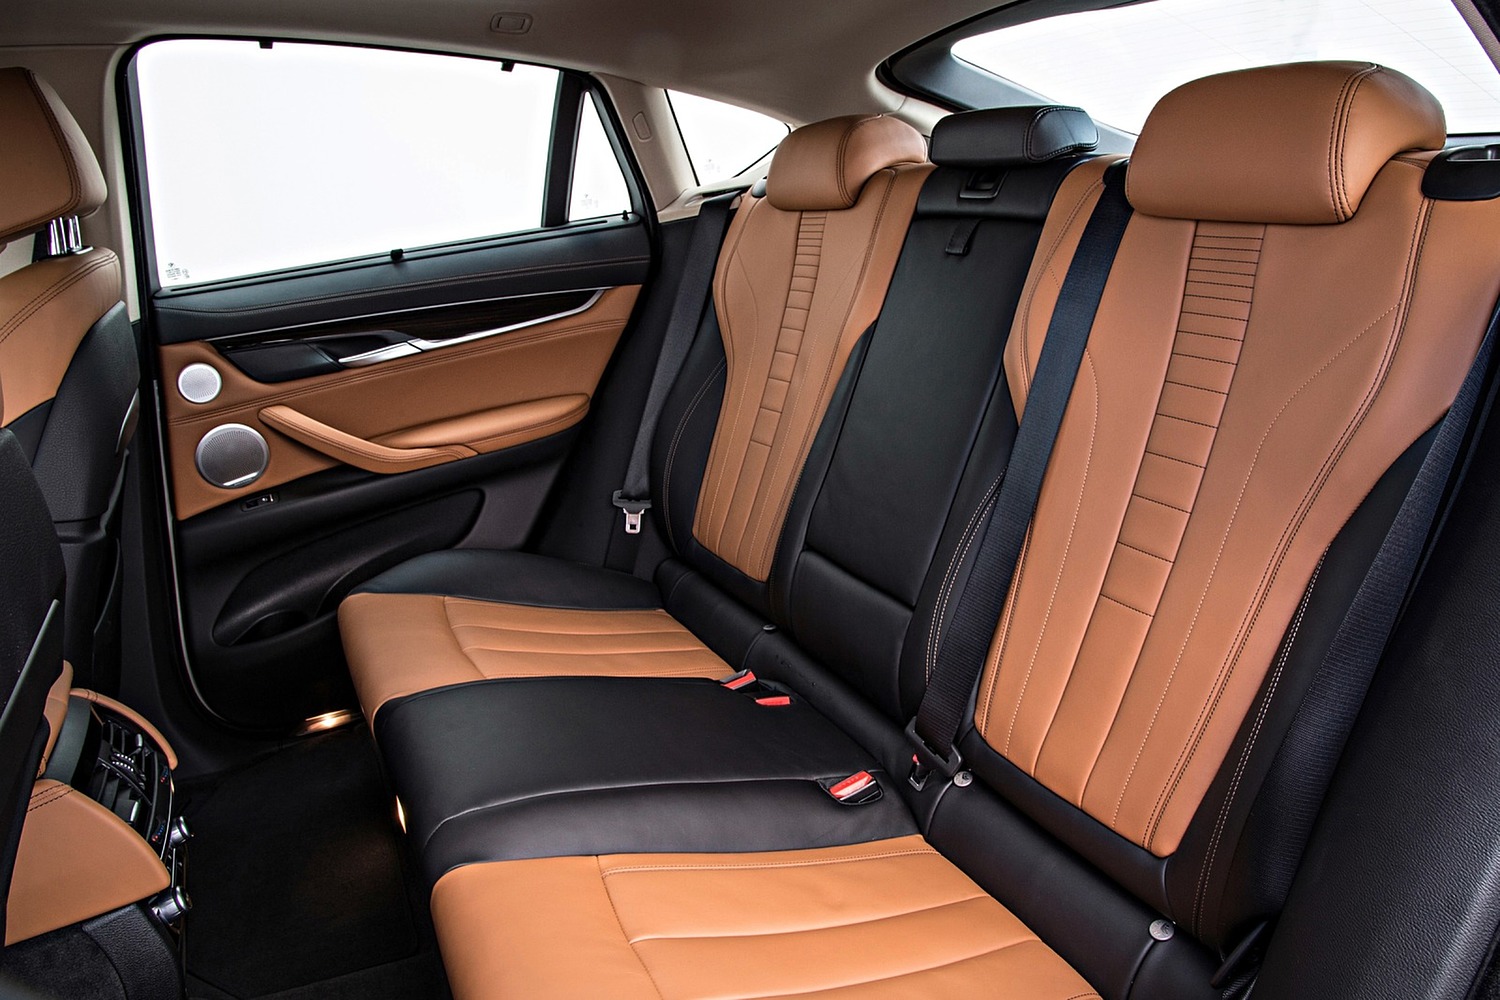 BMW X6 xDrive50i 4dr SUV Rear Interior (2016 model year shown)